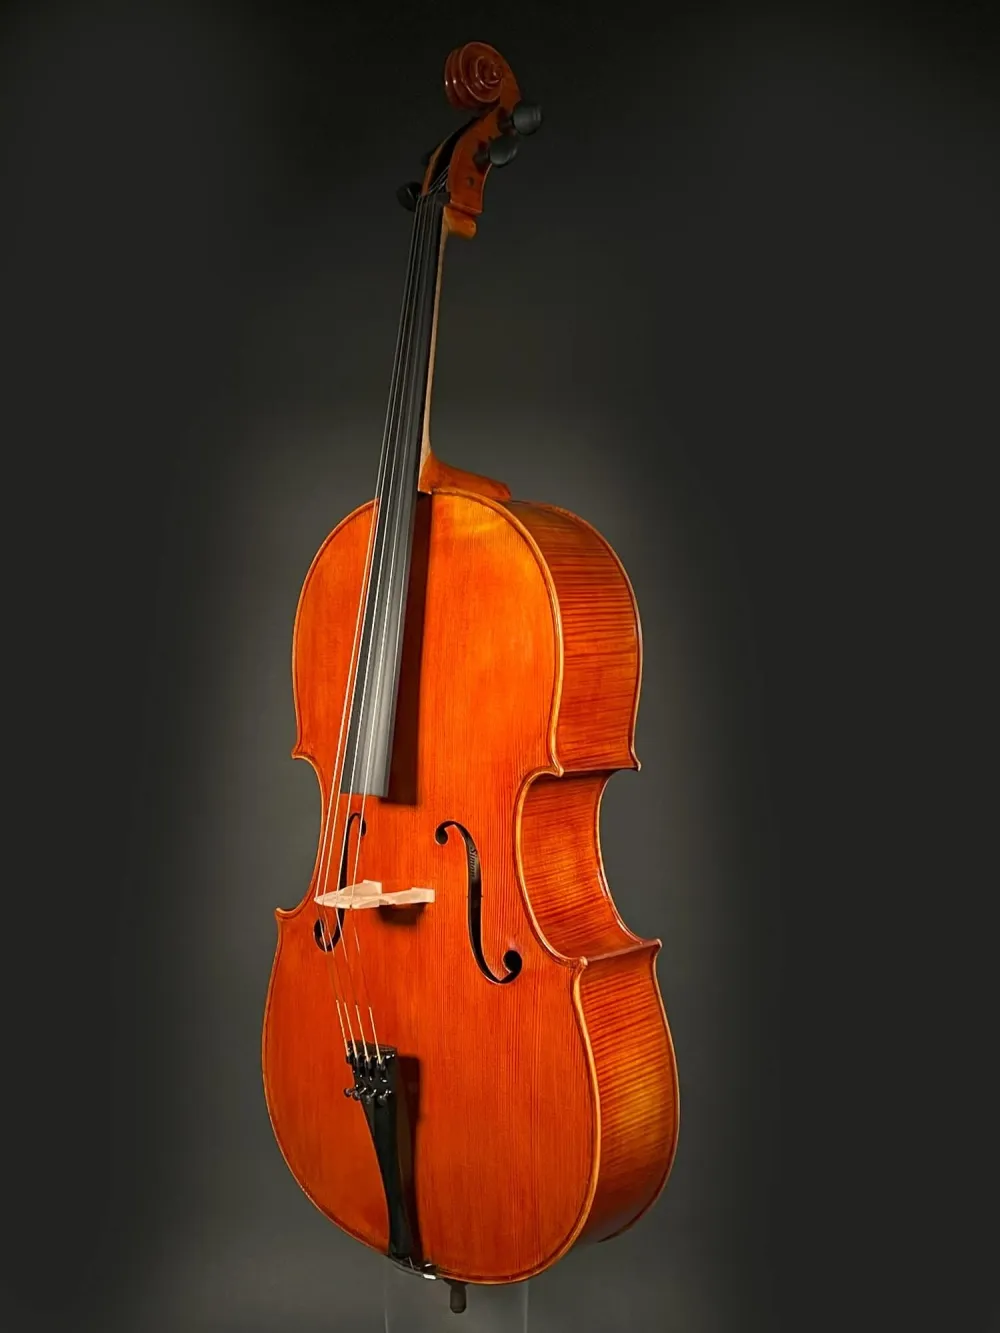 Seiten-Decke-Detailansicht einer Simon Joseph Montagnana Cello (Violoncello) Handarbeit 2020